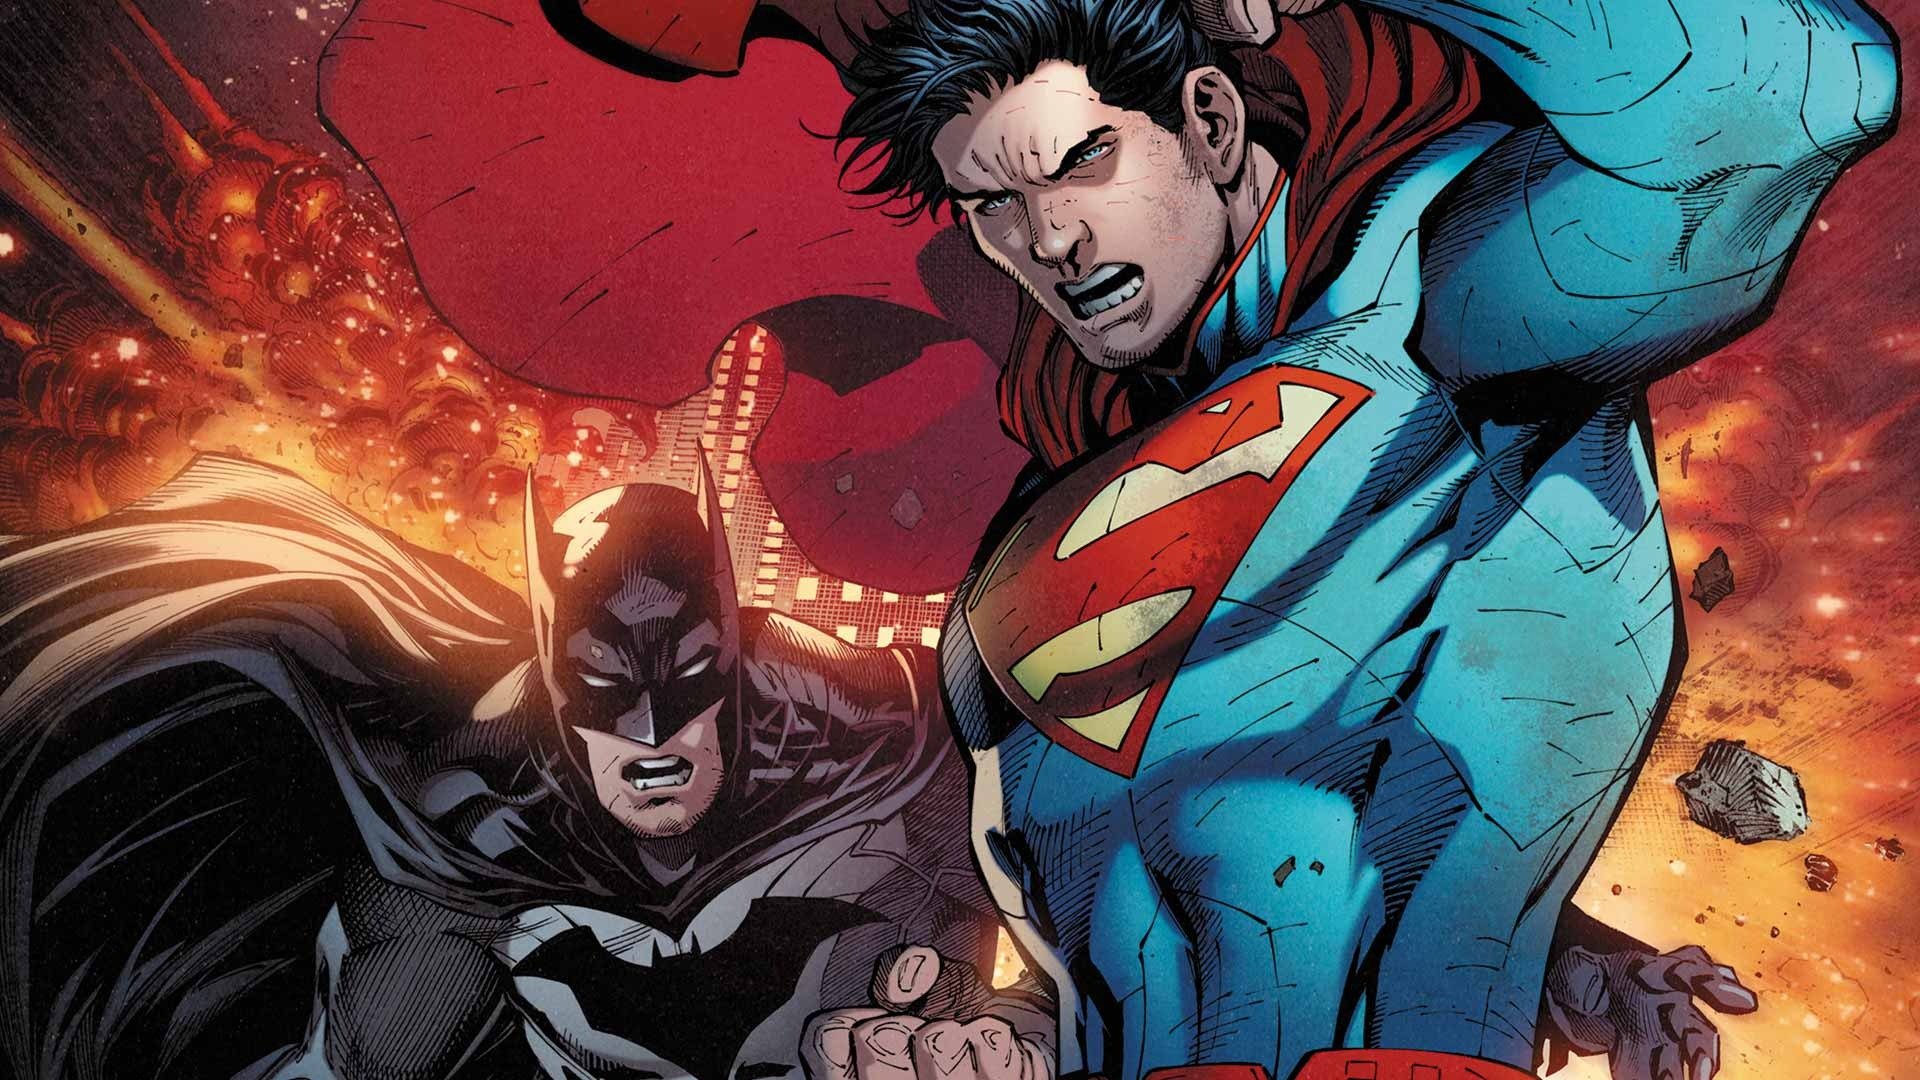 The Batman II e reboot do Superman chegarão em 2025 nos cinemas.